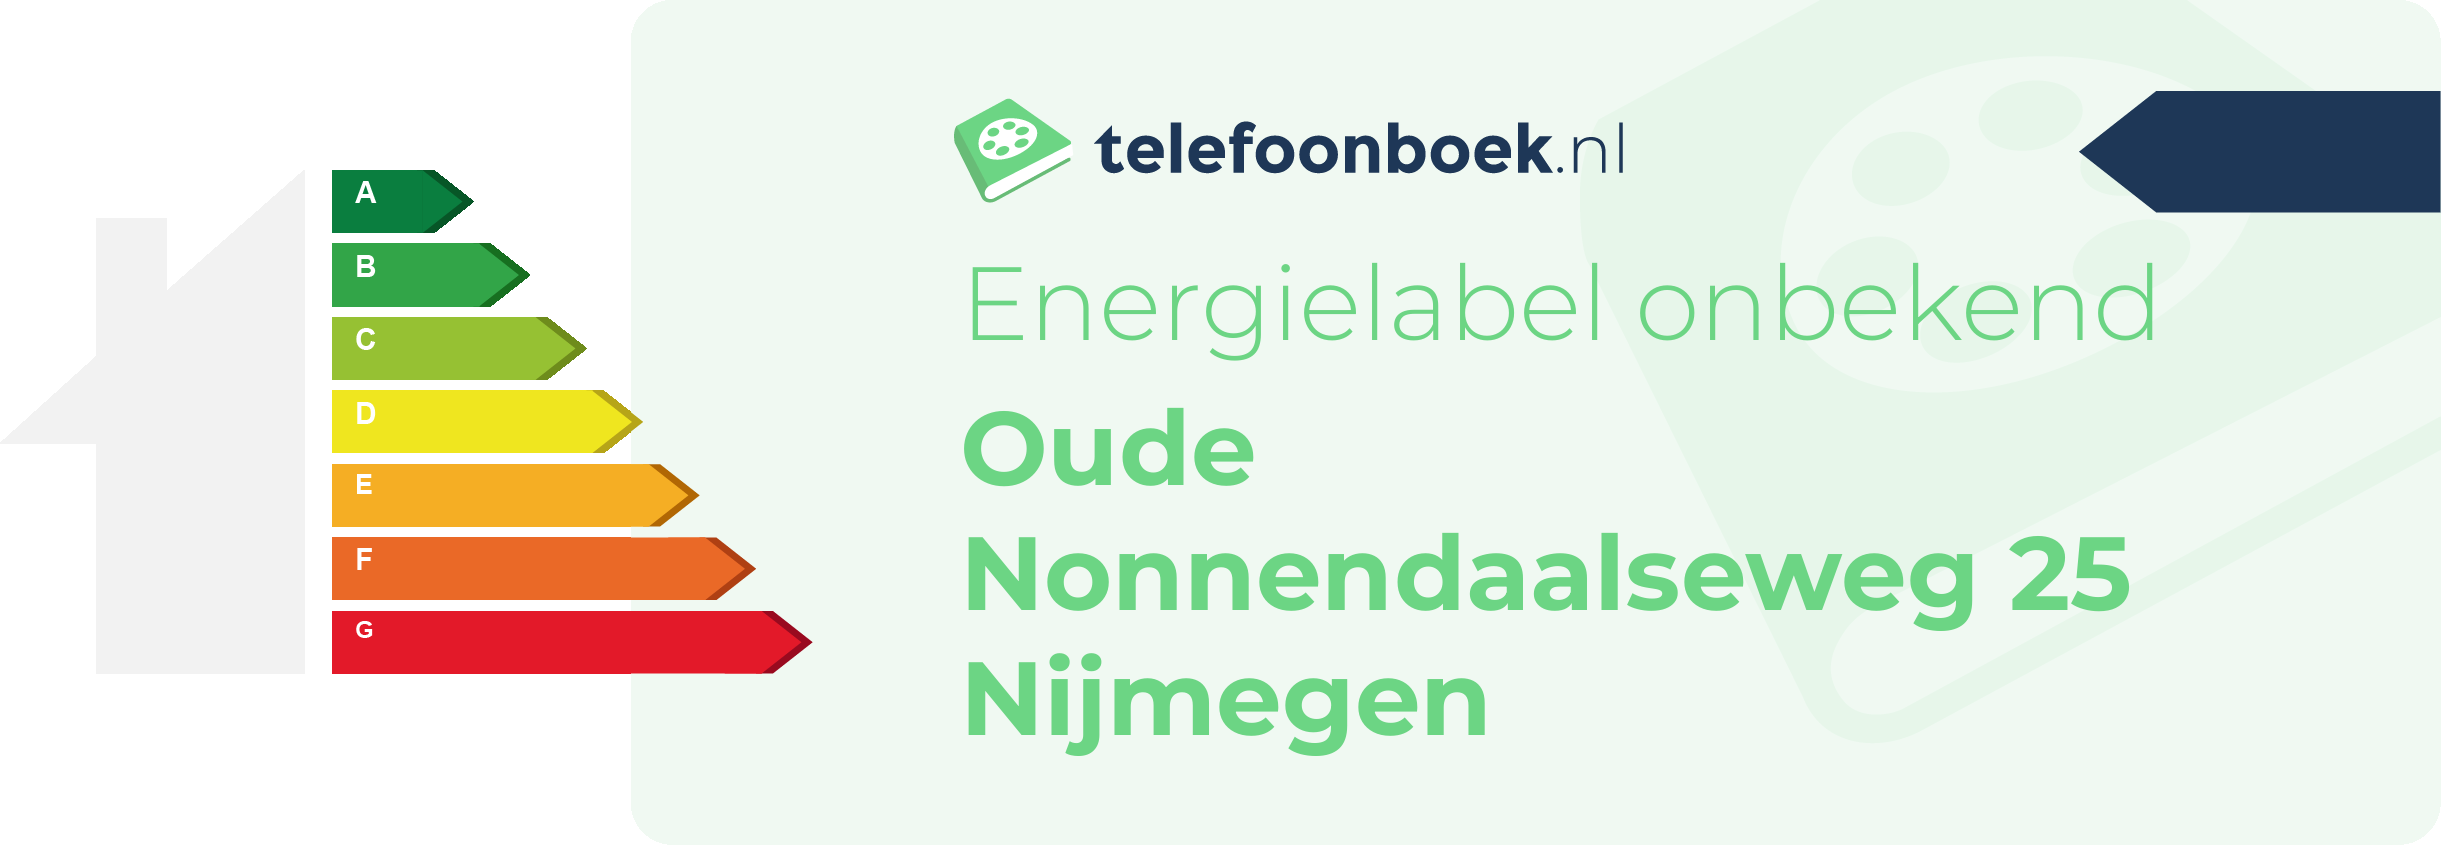 Energielabel Oude Nonnendaalseweg 25 Nijmegen